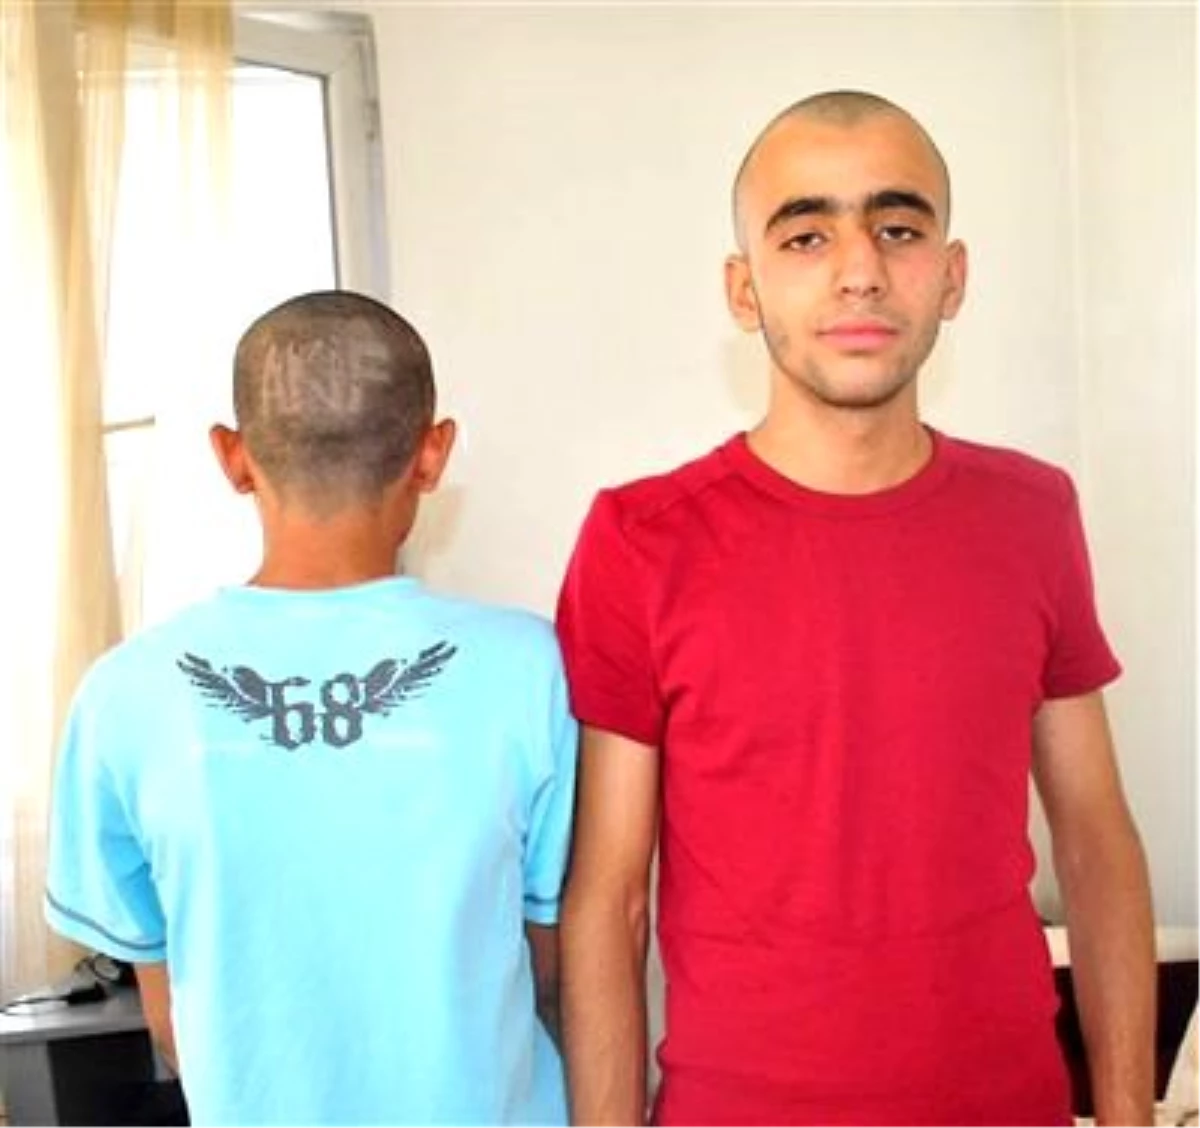 Gaziantepli Gençlerin Saçta İsim Trendi İlgi Çekiyor